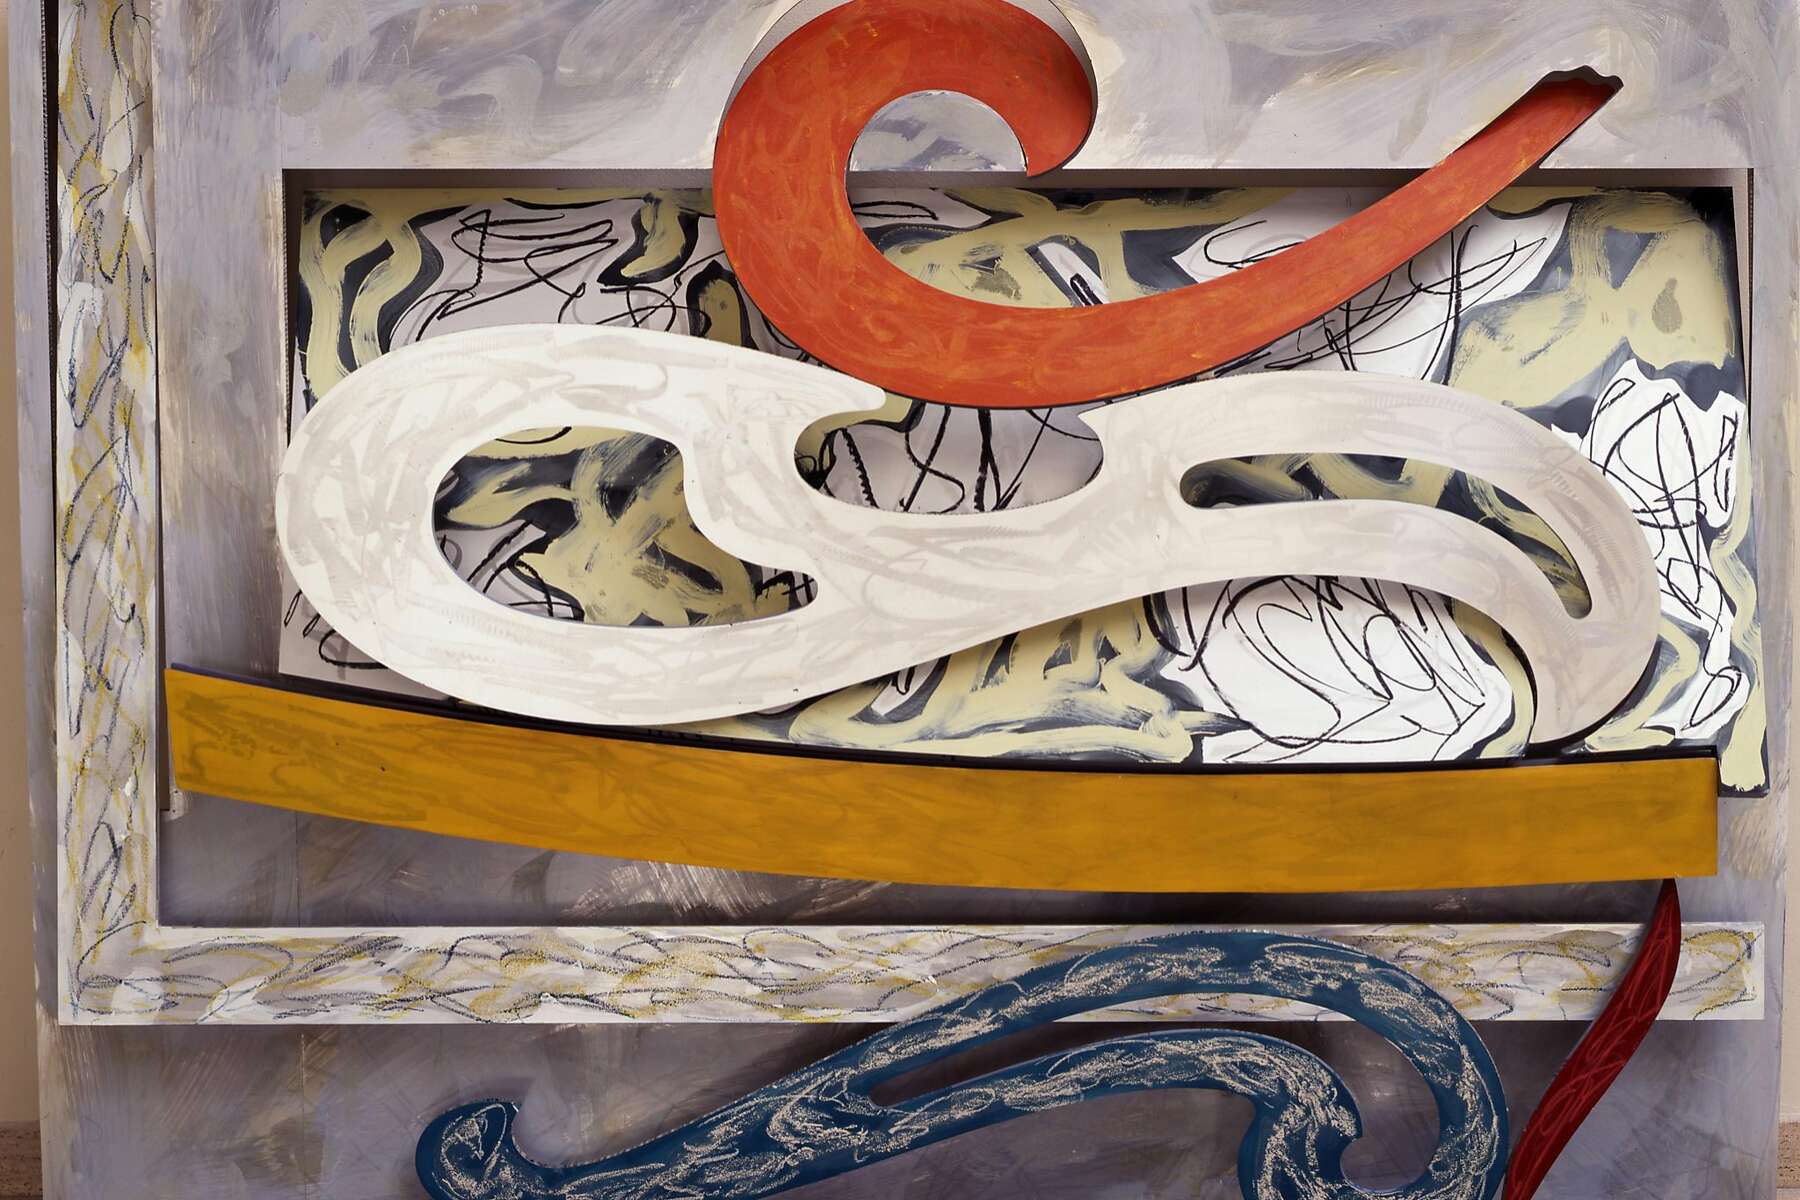 A brisk Frank Stella retrospective at de Young Museum